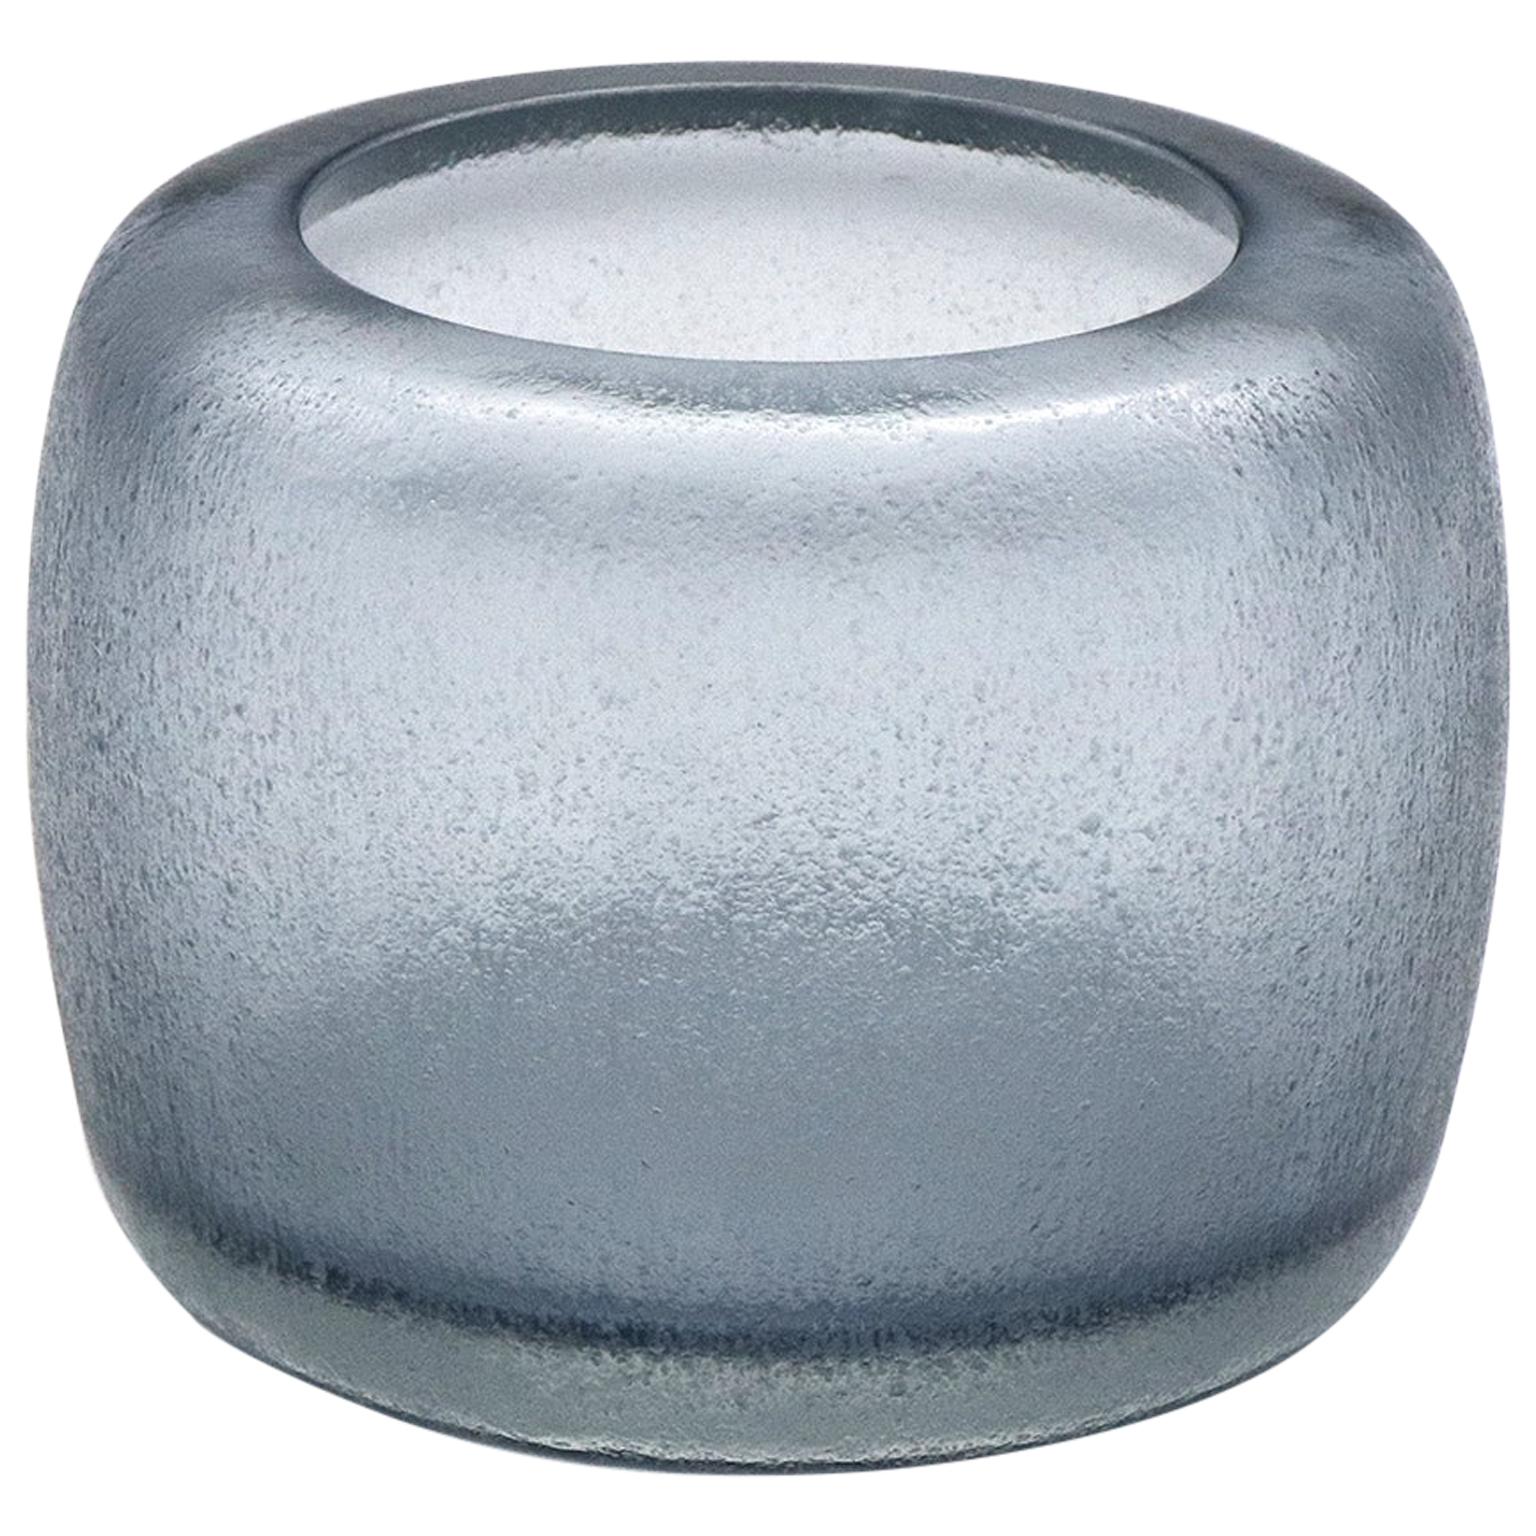 21st Century by Micheluzzi Glass Pozzo Silver Vase Handmade Murano Glass For Sale